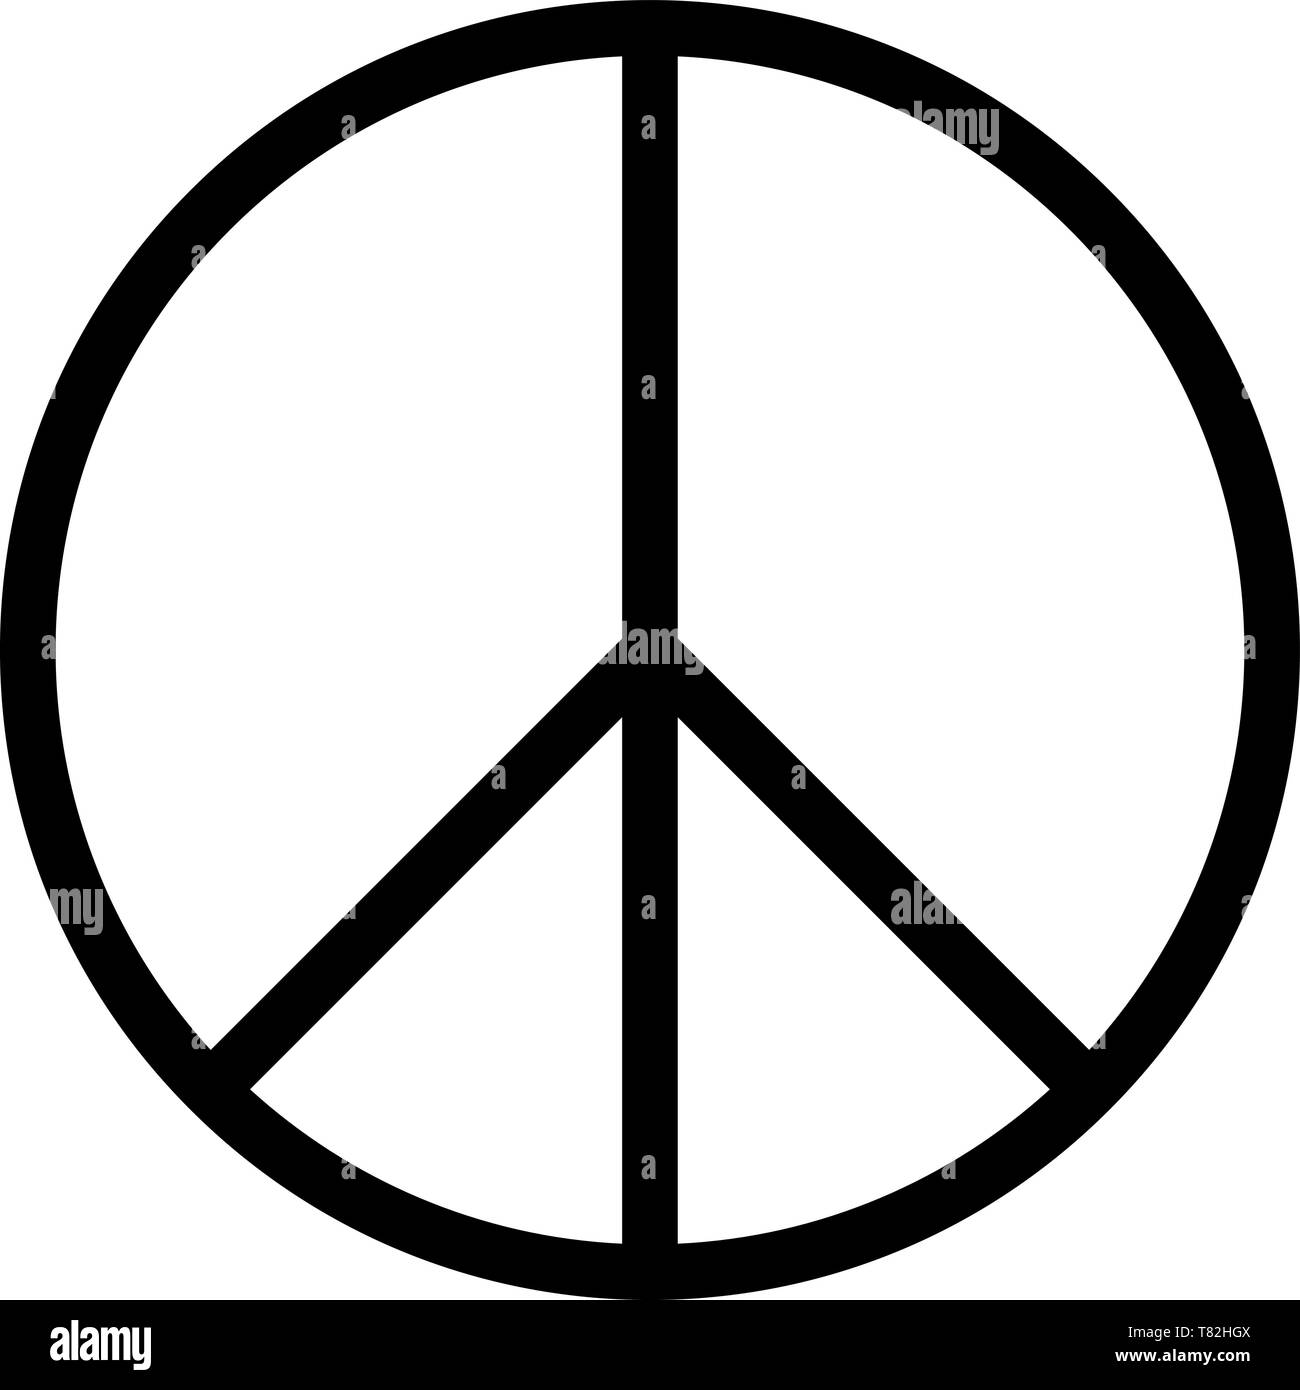 peace sign rune lifelun deathrune algiz war resistance Stock Vector